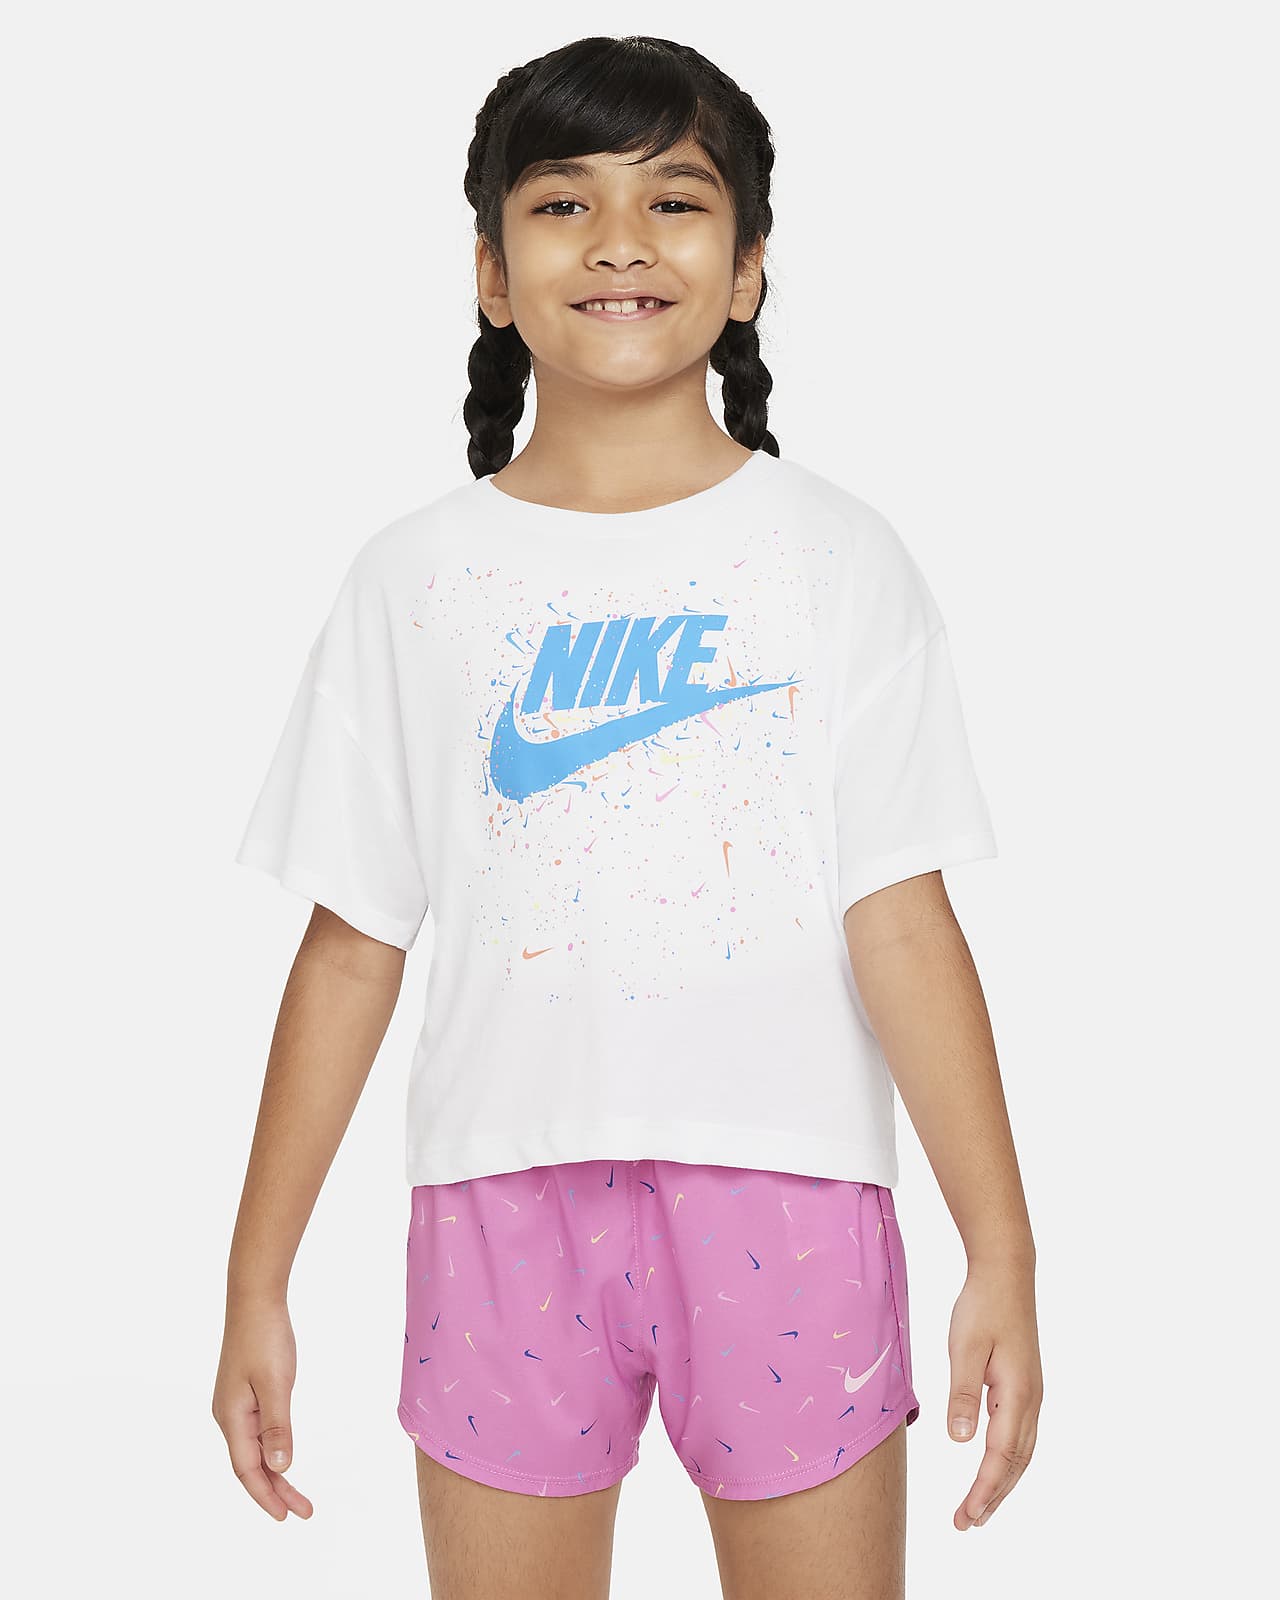 T-shirt Nike - Bambini